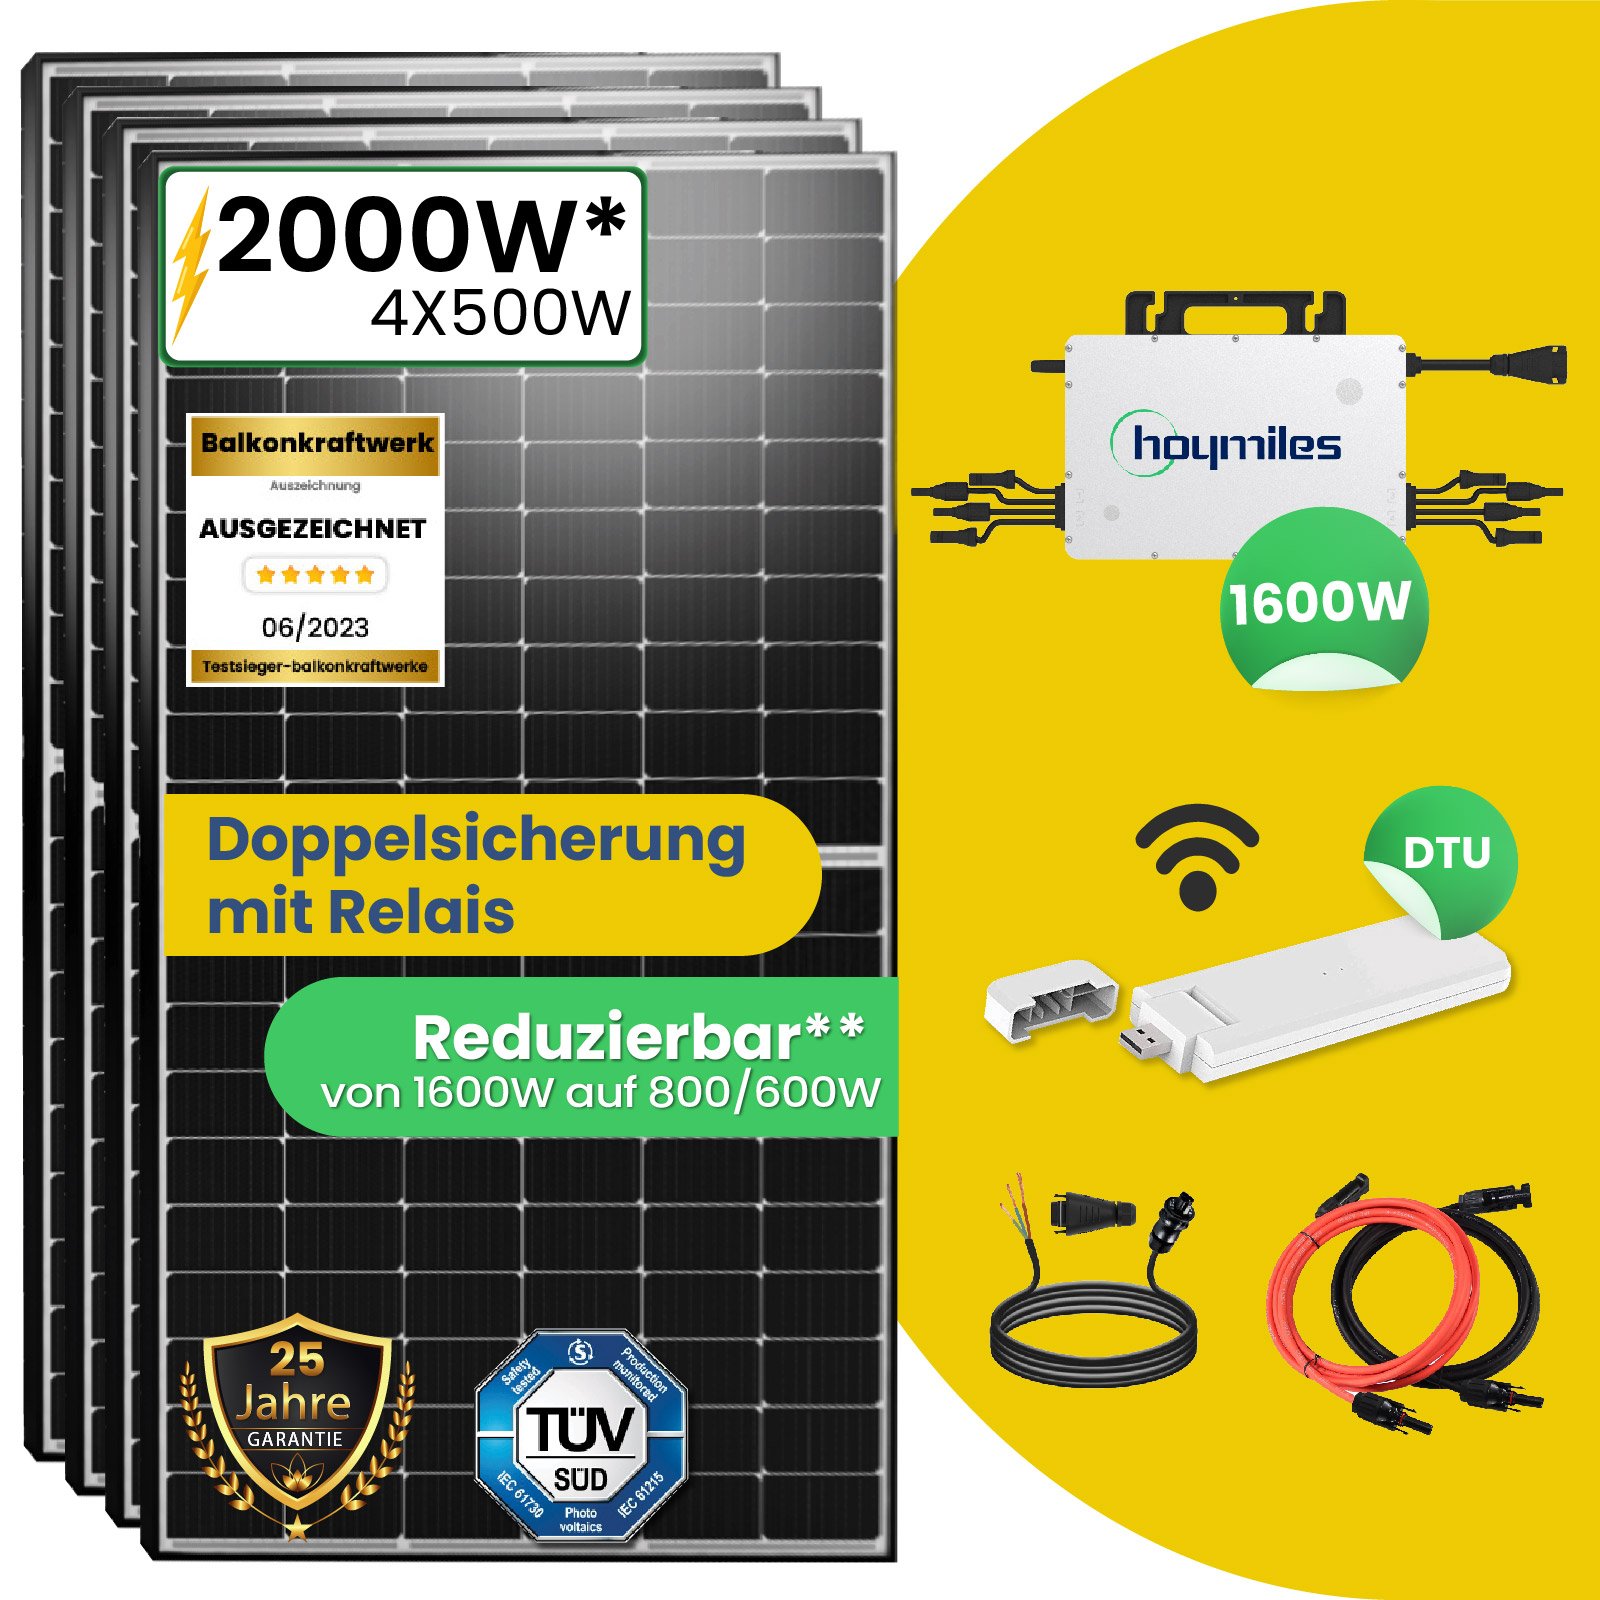 2000W Photovoltaik Balkonkraftwerk mit EPP 500W Solarmodule und